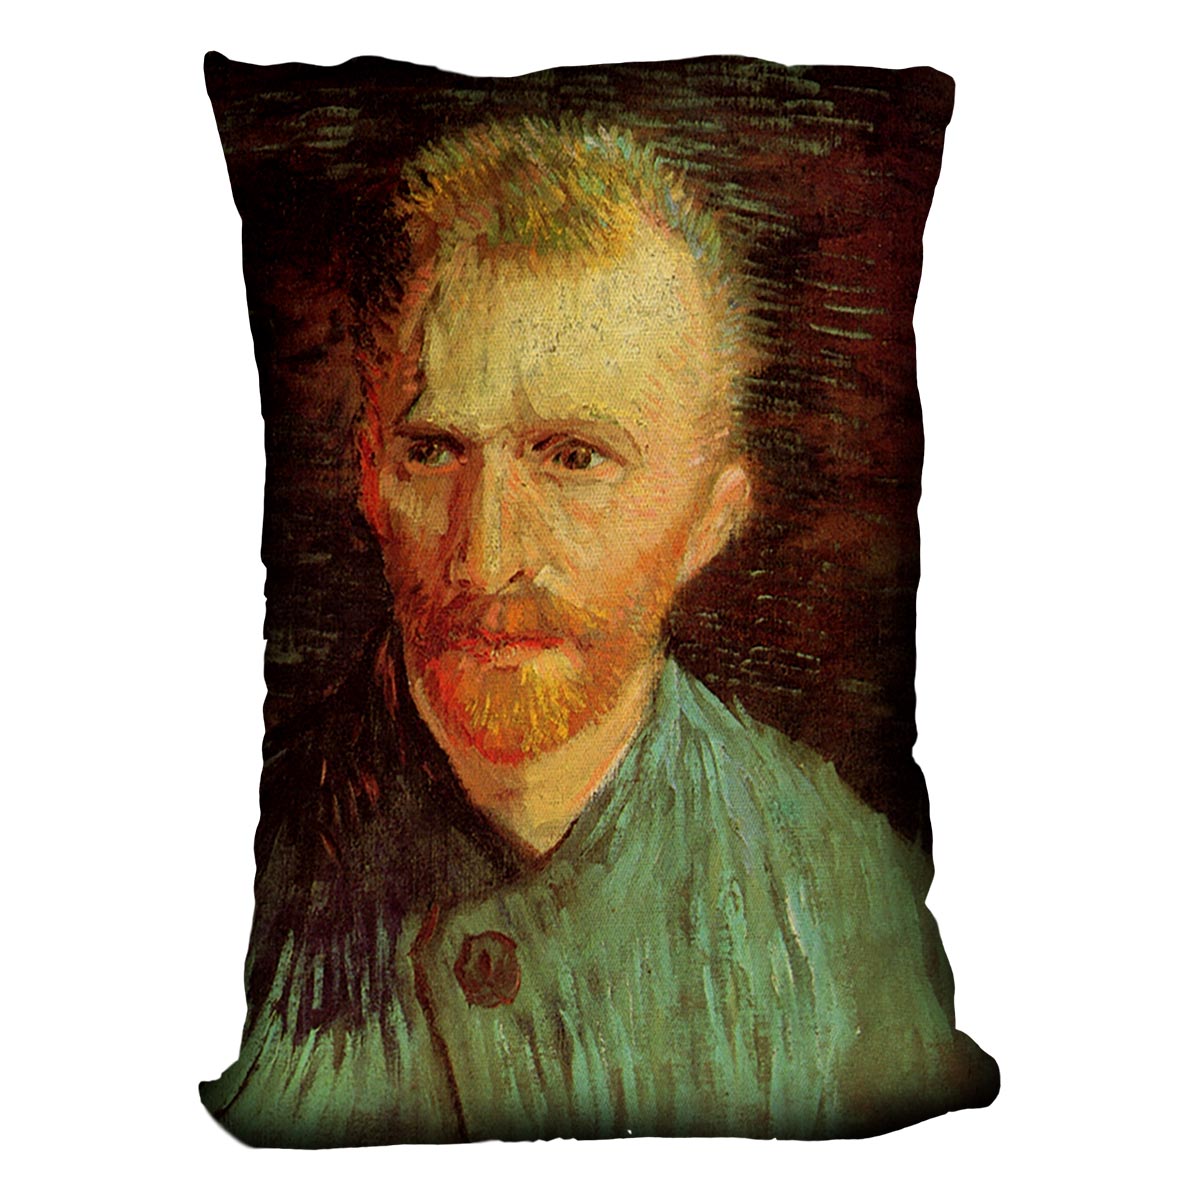 Self-Portrait 8 by Van Gogh Cushion